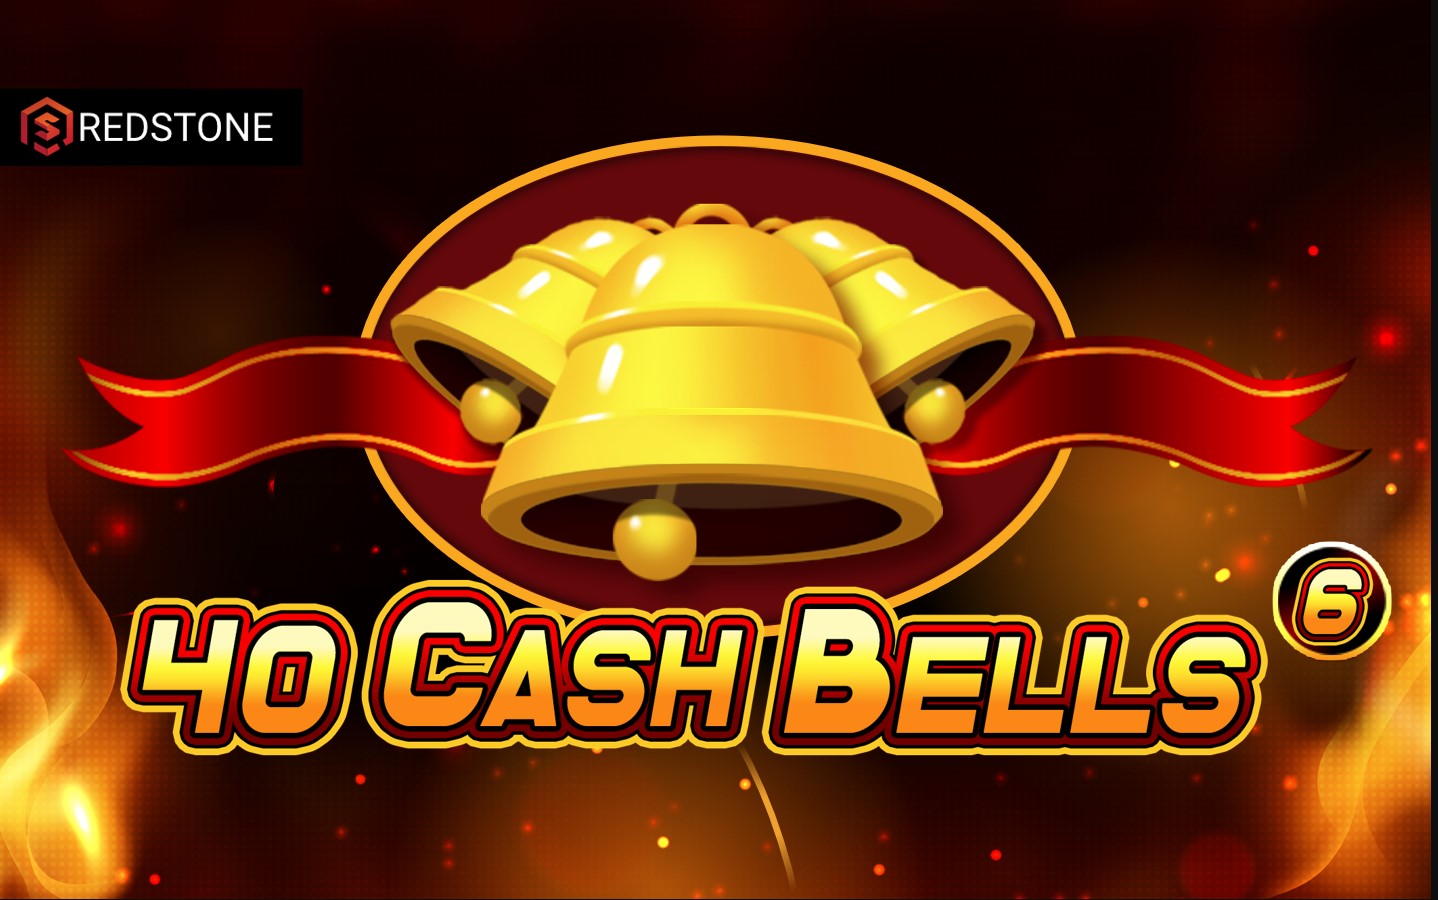 40 Cash Bells